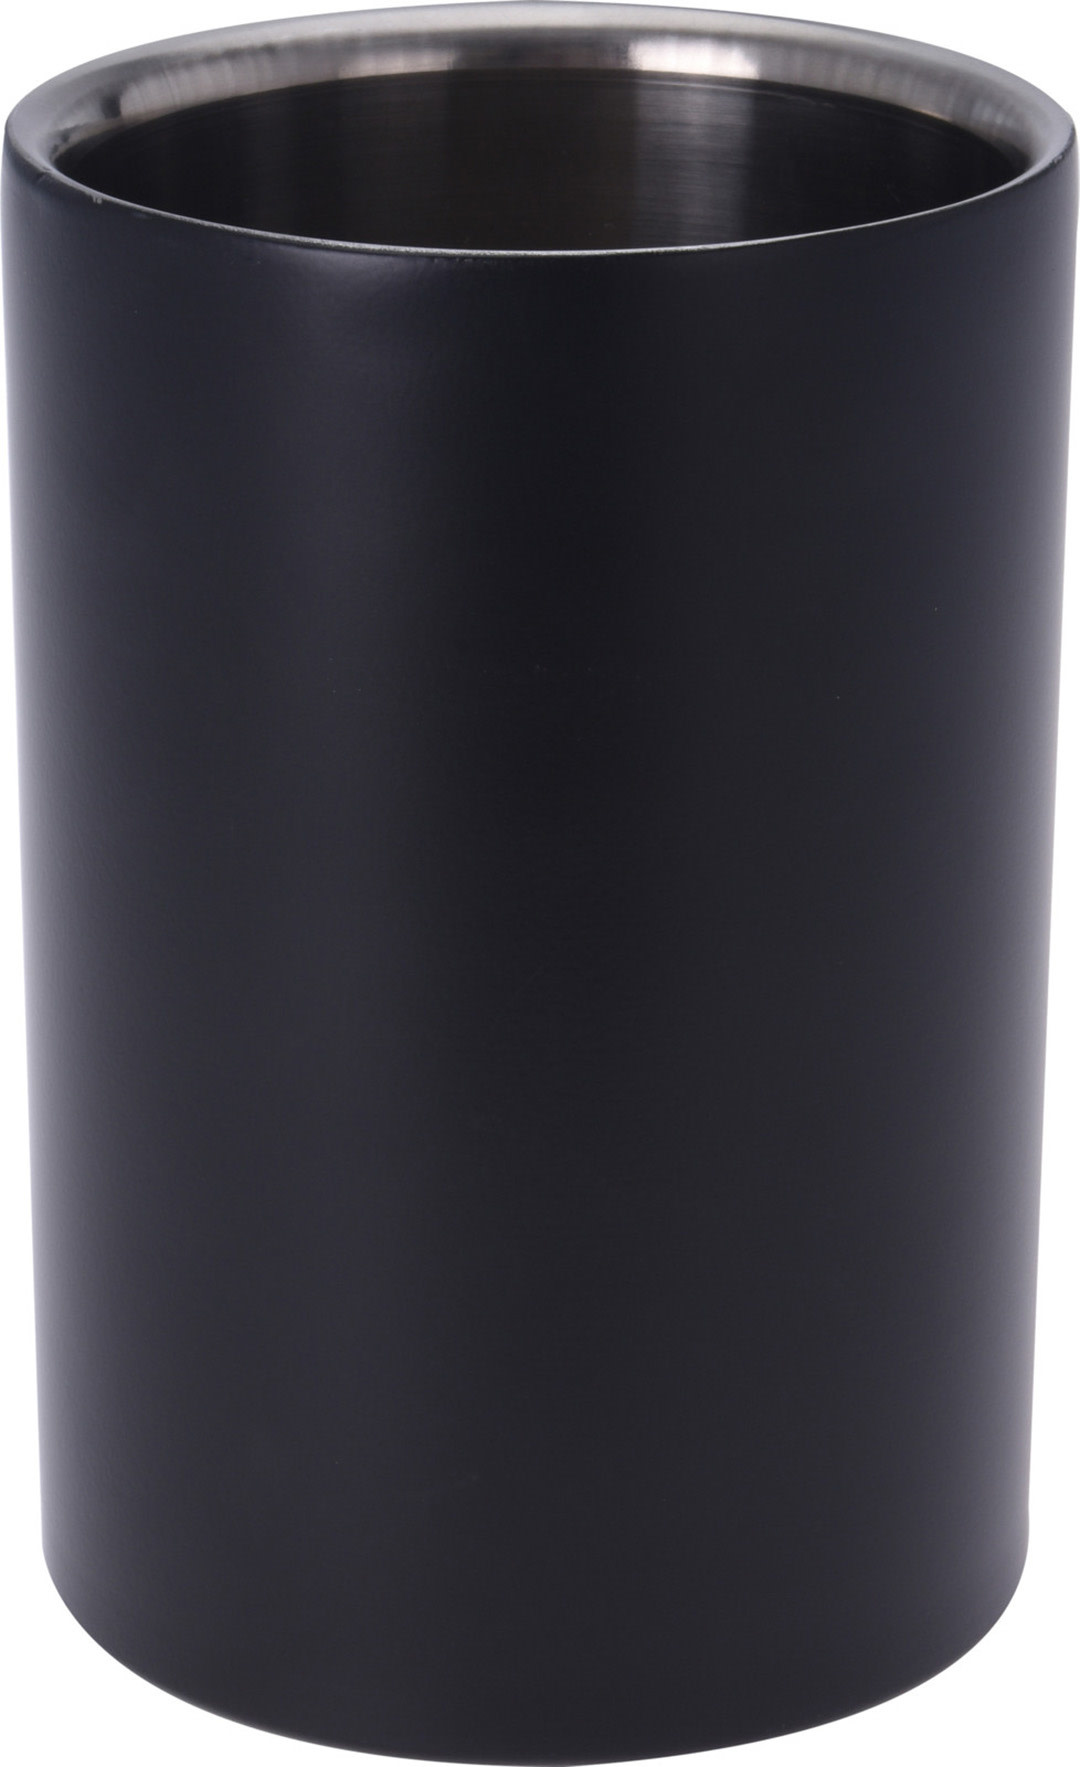 Koopman Wine Cooler Stainless Steel - Black